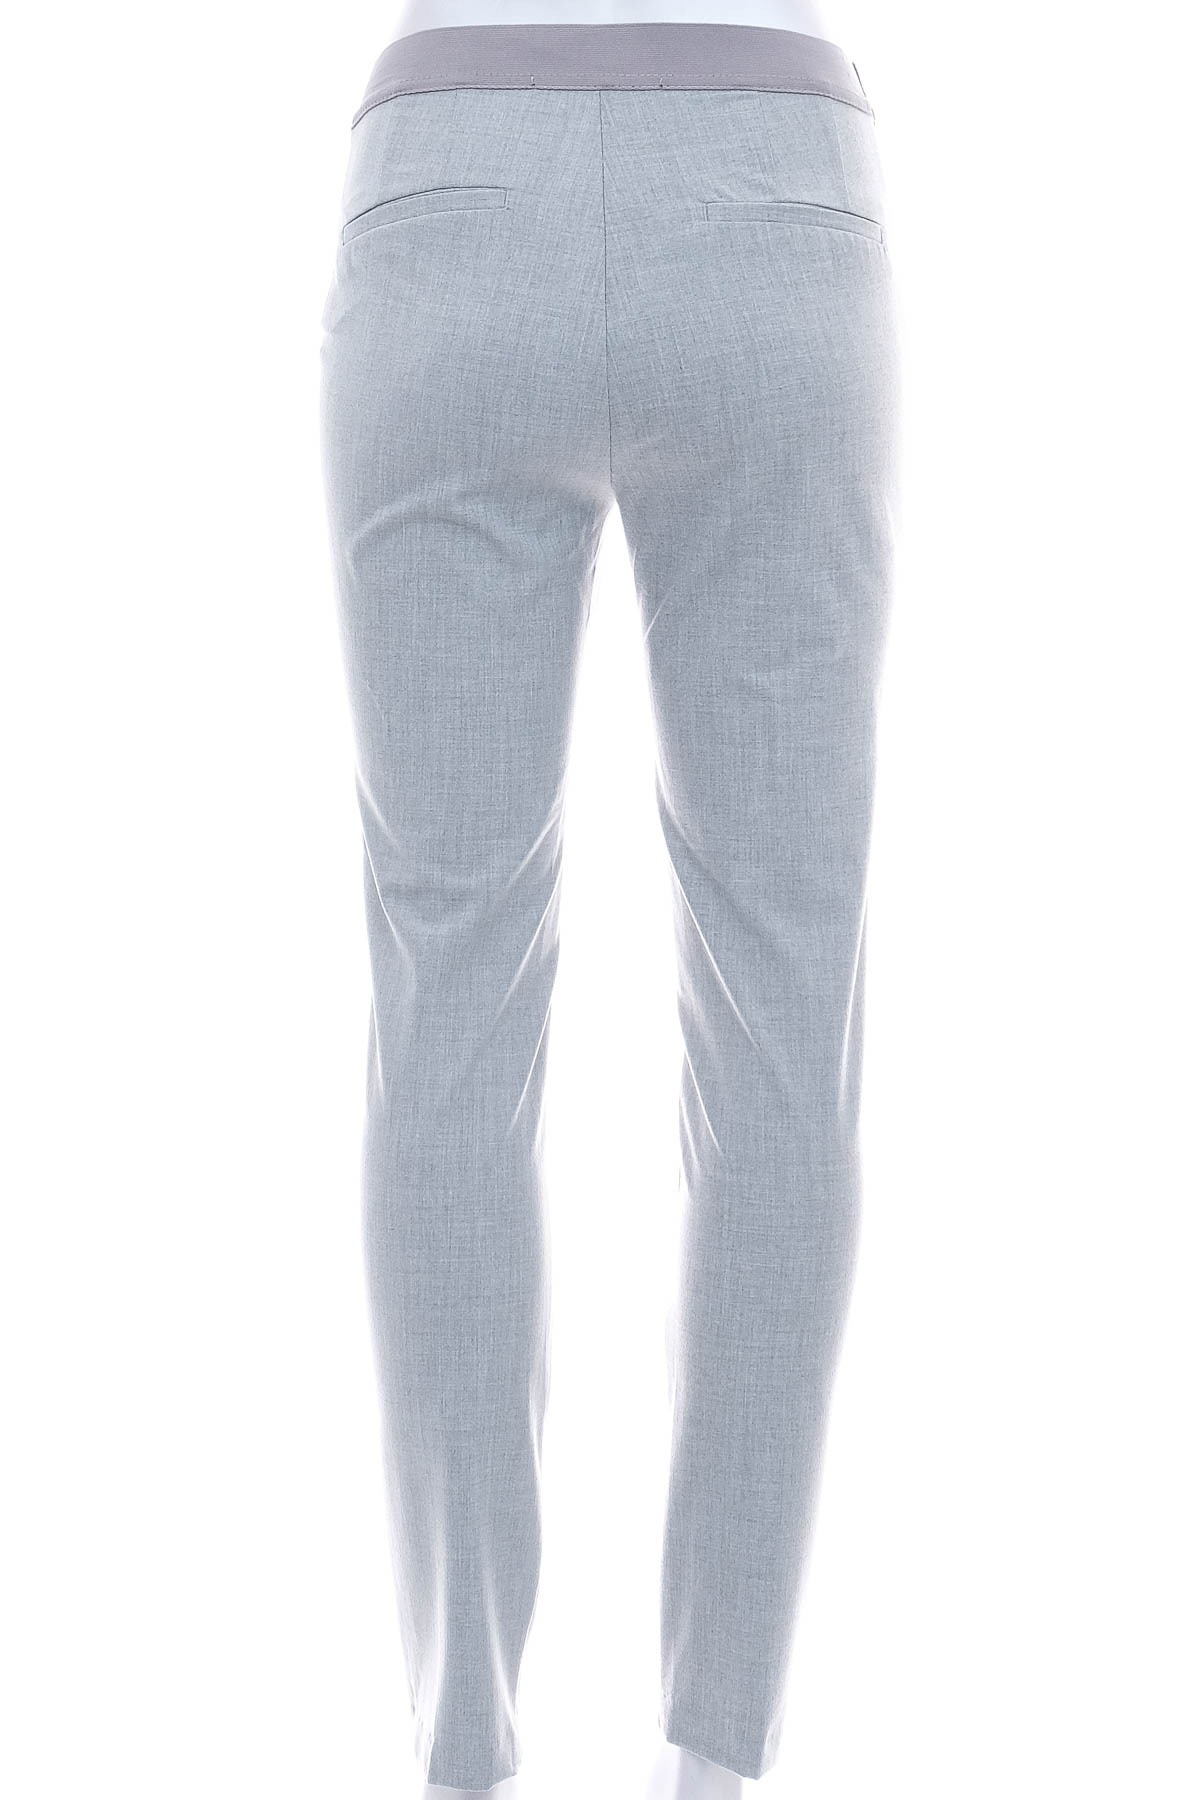 Pantaloni de damă - ZARA Basic - 1